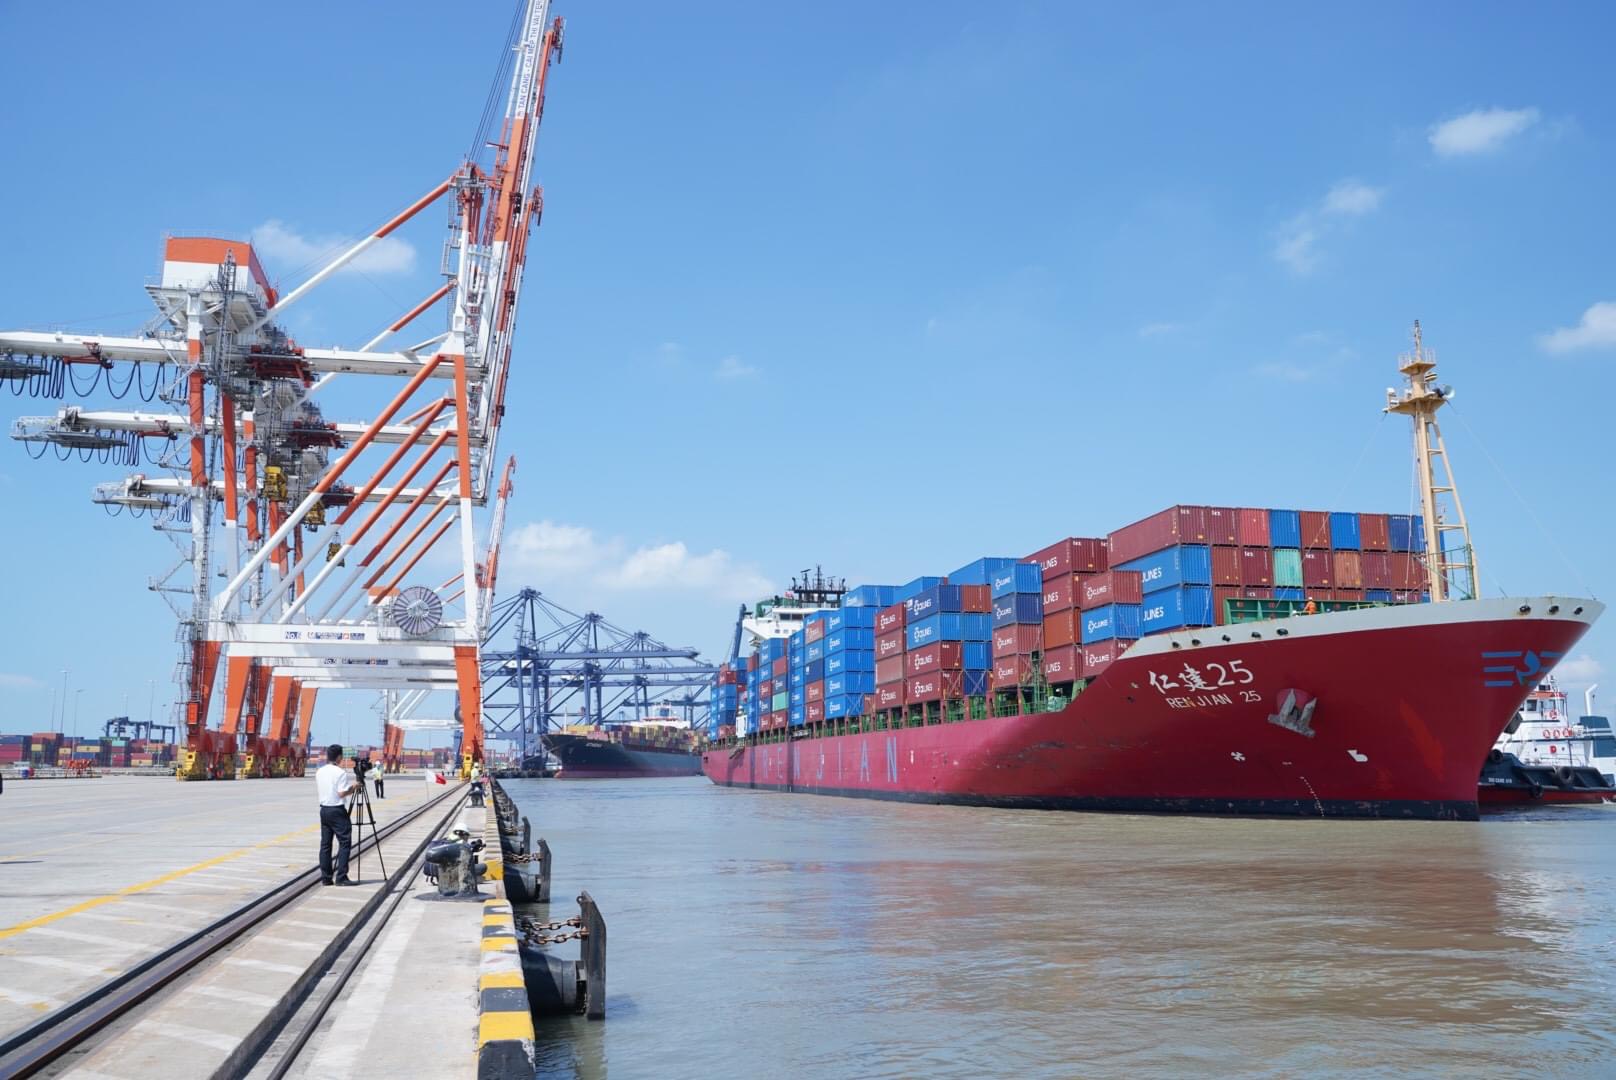 Từ đầu năm đến nay, hàng container thông qua khu vực Cái Mép - Thị Vải đạt khoảng 2,3 triệu TEU, tăng 47% so với cùng kỳ năm ngoái. Trong ảnh: Cảng Tân Cảng - Cái Mép Thị Vải (TCTT) đón tàu REN JIAN 25 khai thác tuyến dịch vụ CES của hãng tàu China United Line (CU Lines) lần đầu cập cảng vào ngày 2/5.